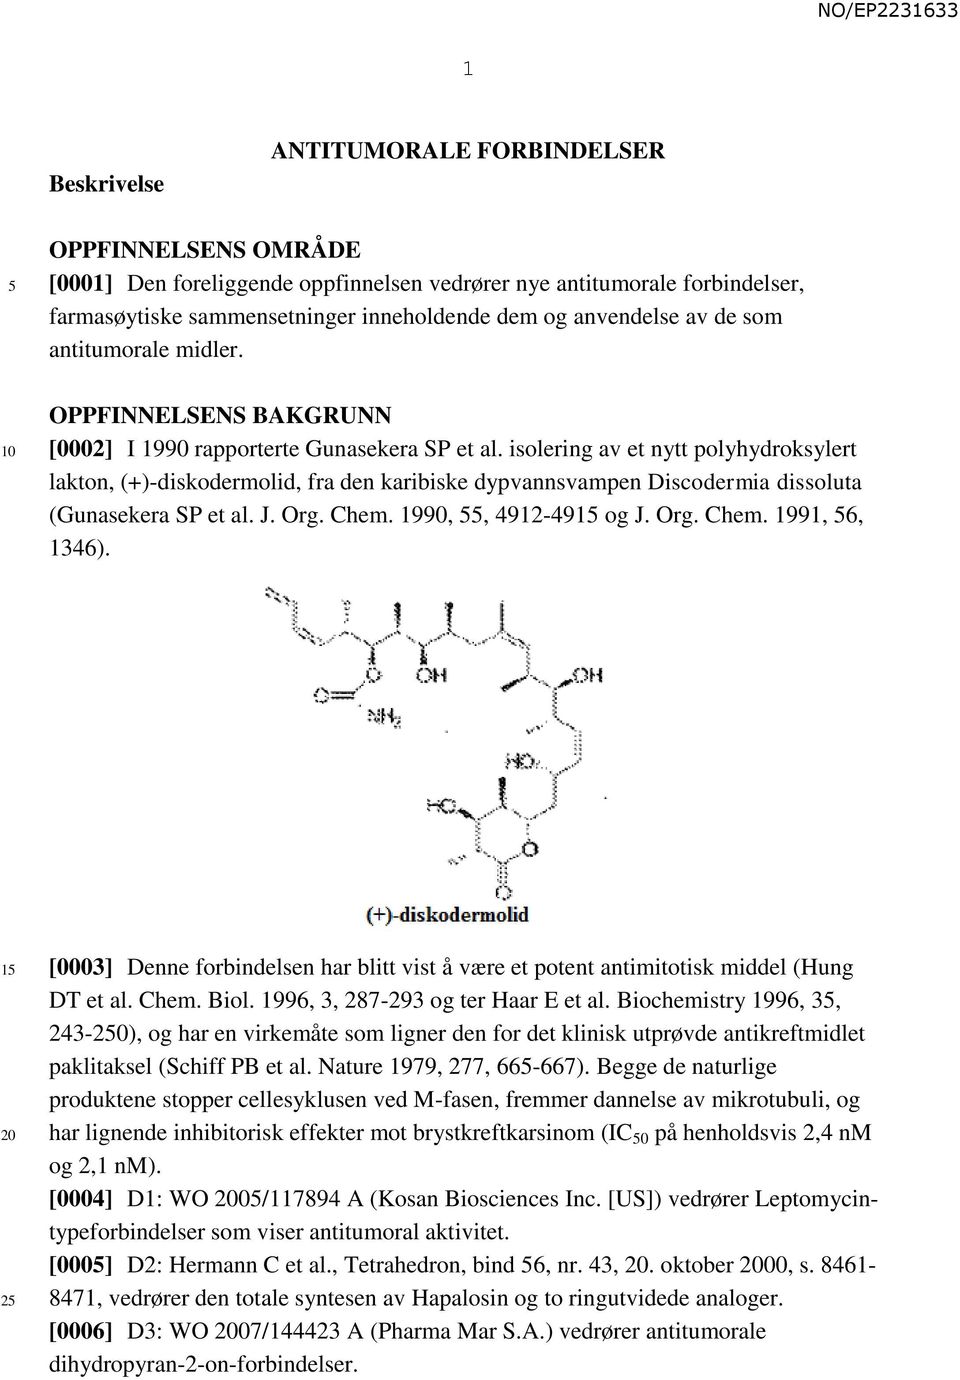 isolering av et nytt polyhydroksylert lakton, (+)-diskodermolid, fra den karibiske dypvannsvampen Discodermia dissoluta (Gunasekera SP et al. J. Org. Chem. 1990,, 4912-491 og J. Org. Chem. 1991, 6, 1346).